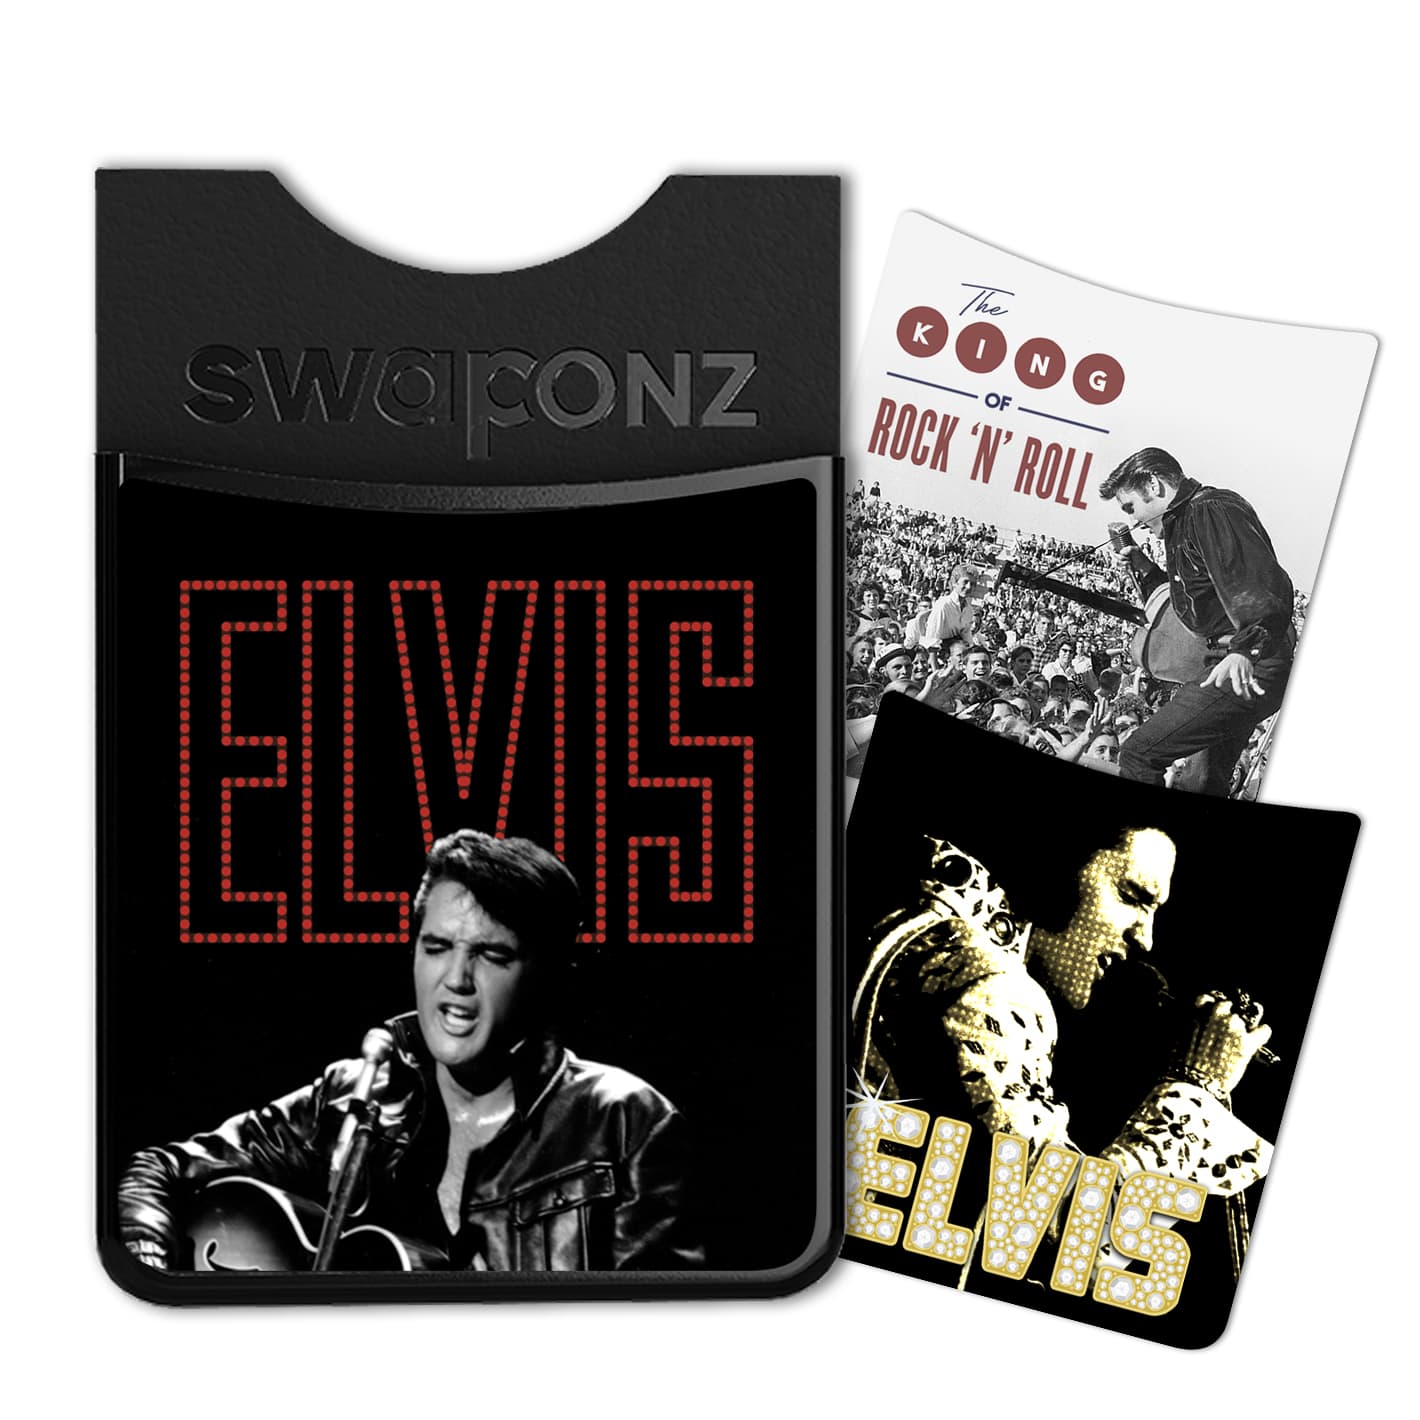 Phone Wallet Set - Elvis Presley 2